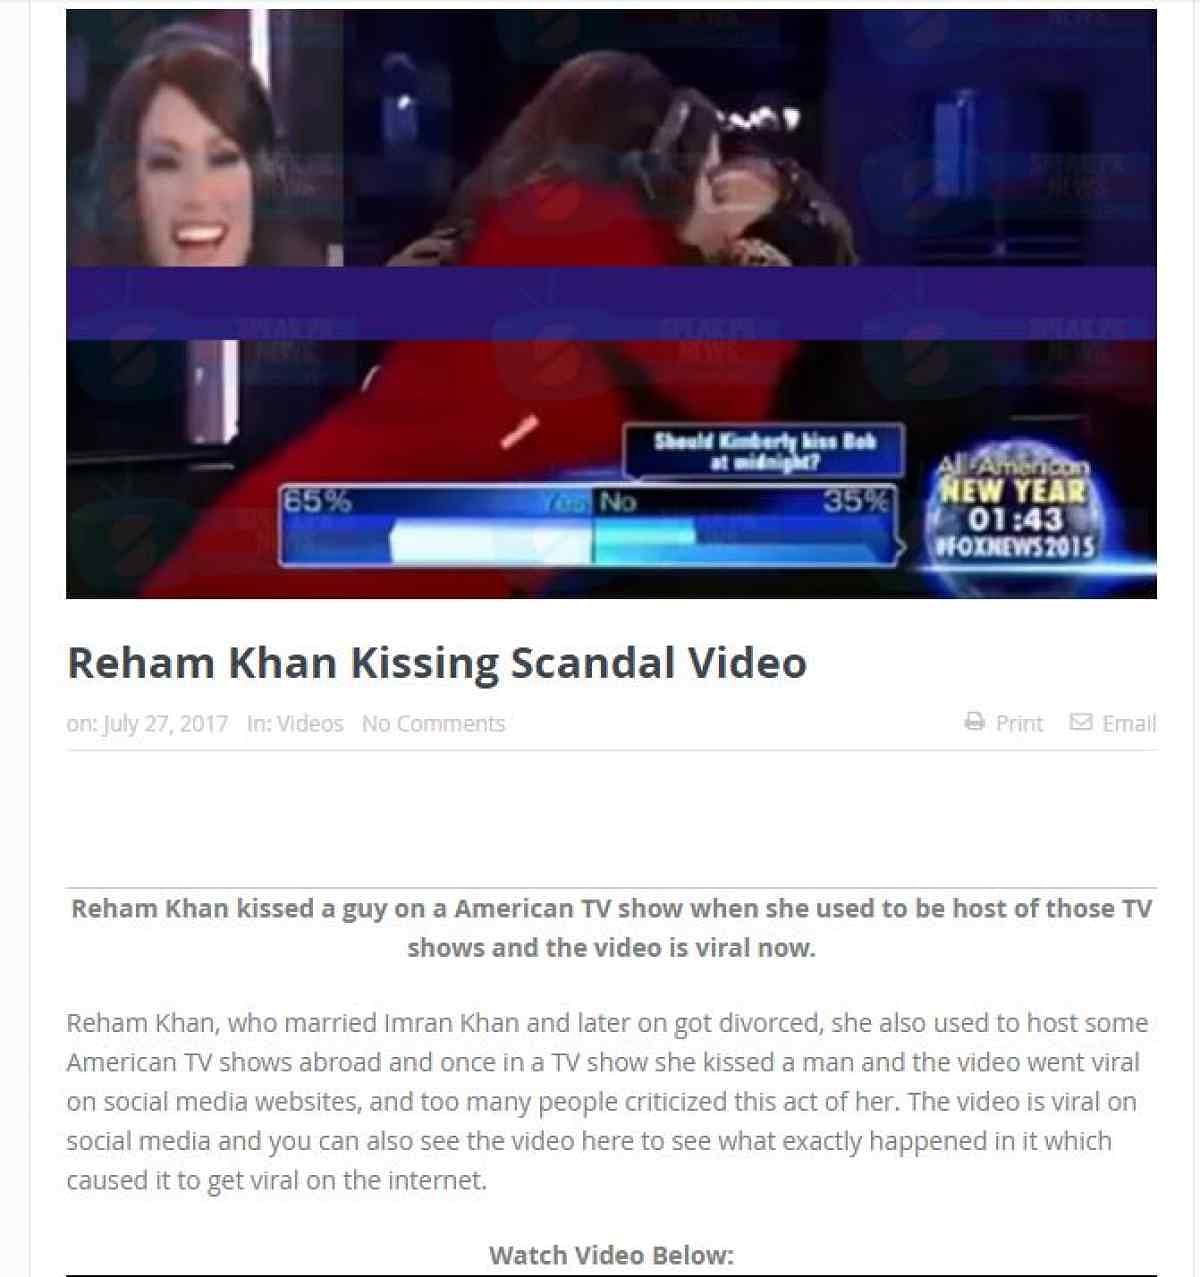 वीडियो में दावा किया जा रहा है कि रेहम खान ने एक अमेरिकी टीवी शो के दौरान एक शख्स को किस कर लिया.